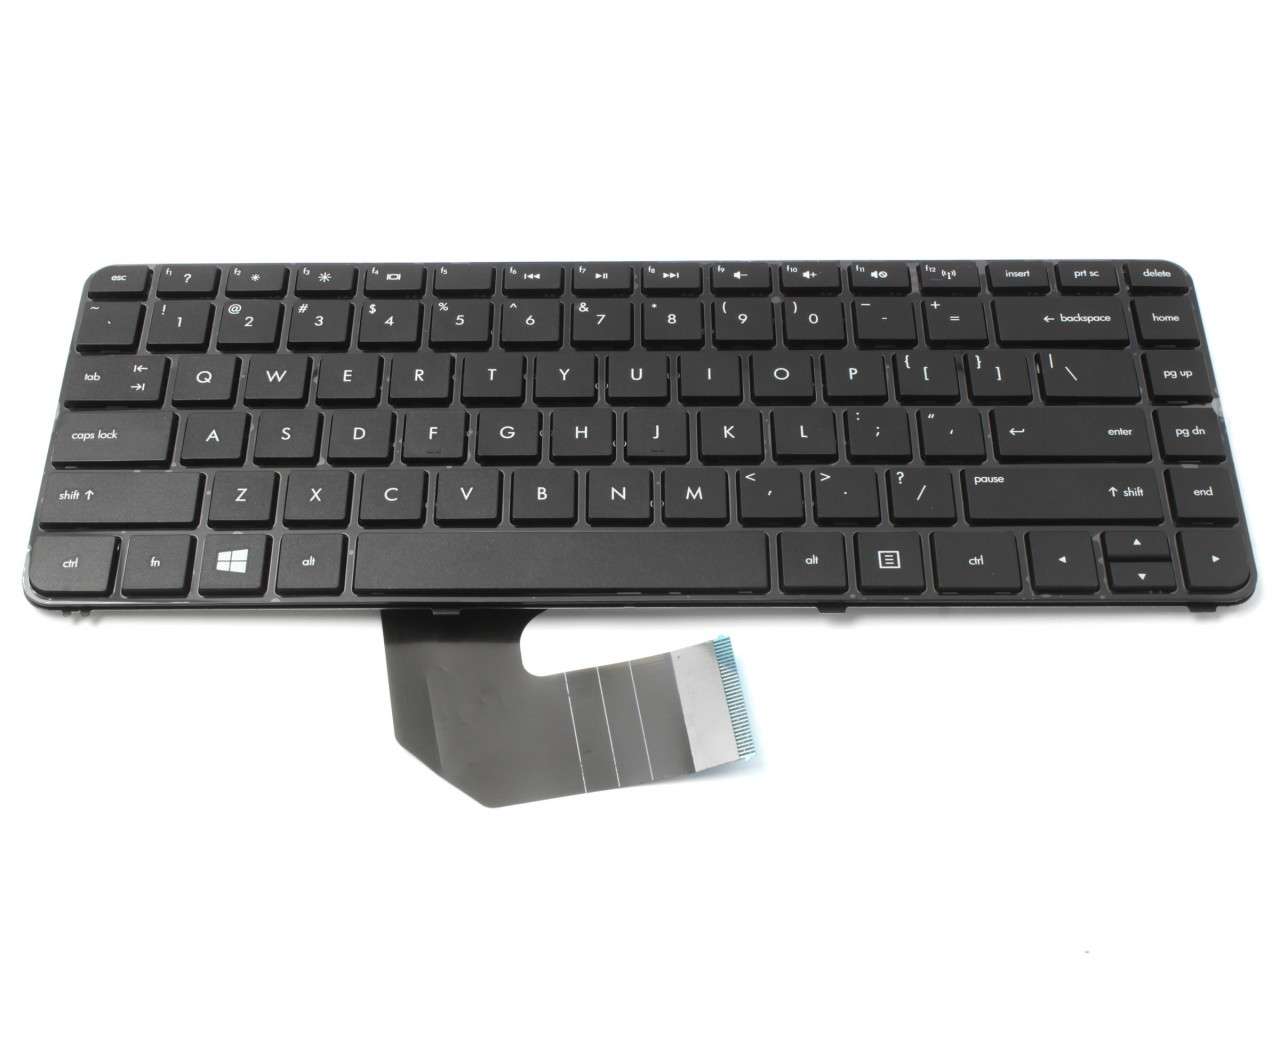 Tastatura HP Pavilion G4 2000